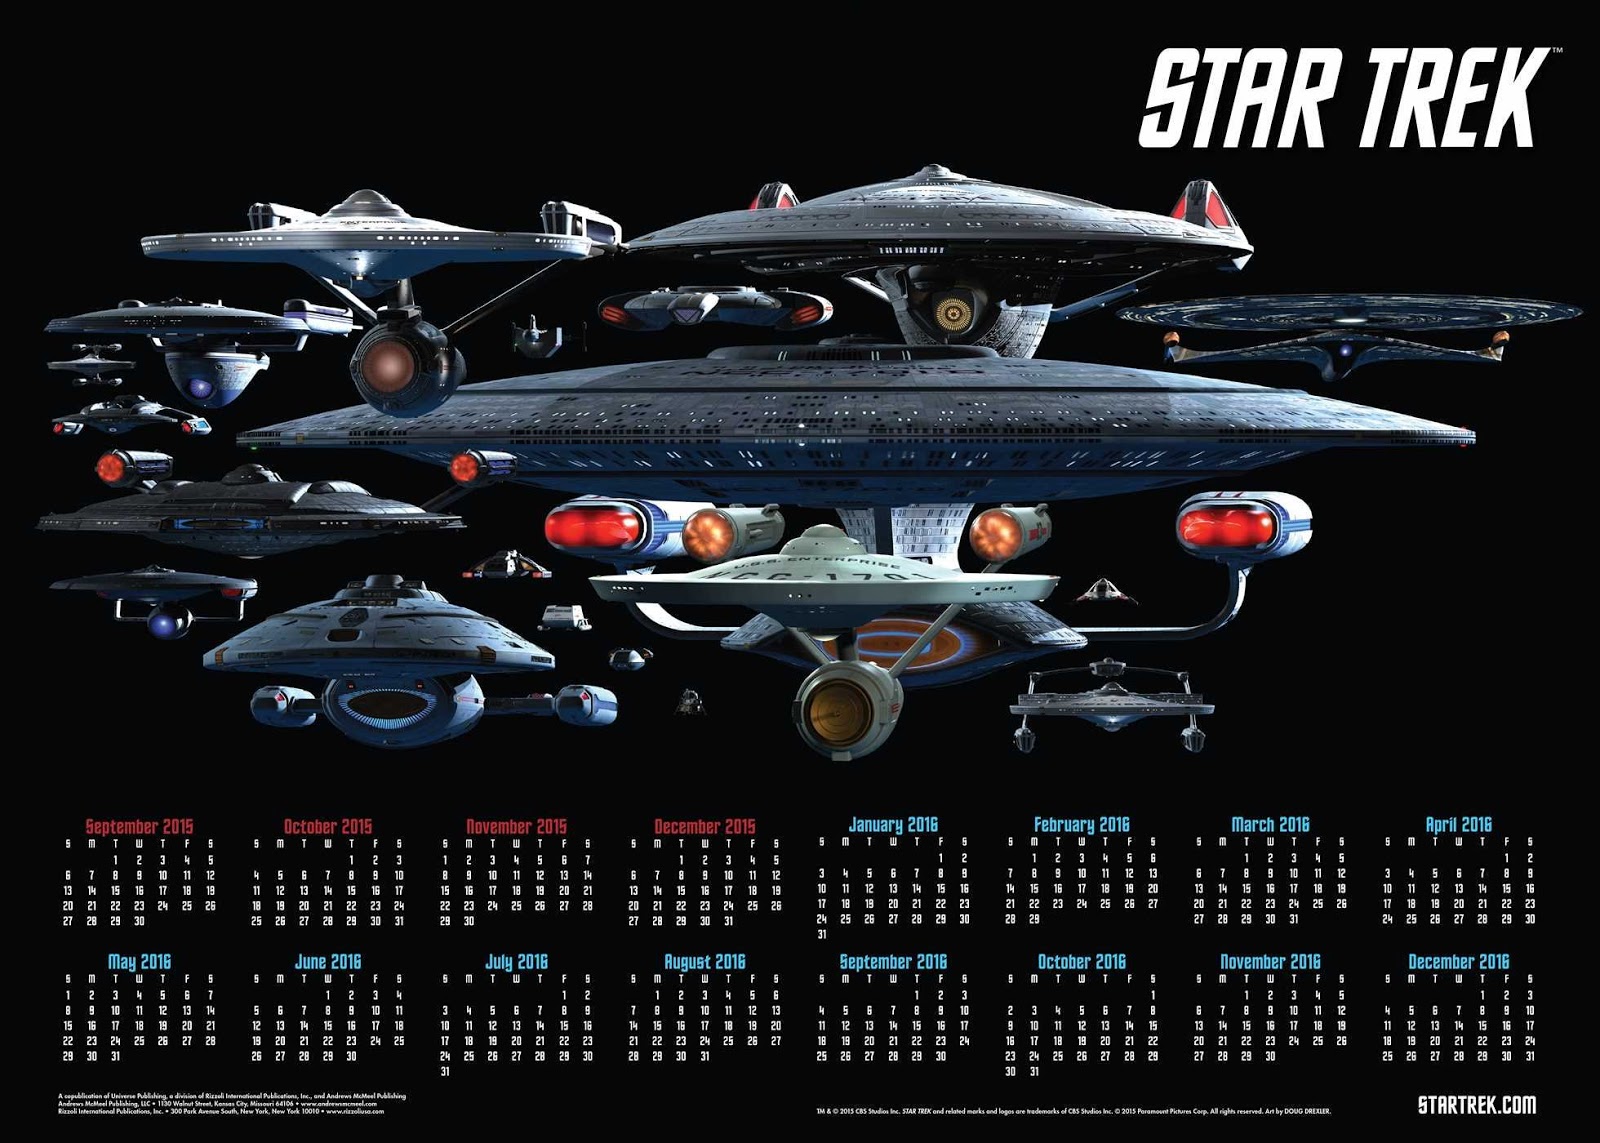 The Trek Collective 2016 Star Trek calendar range revealed!